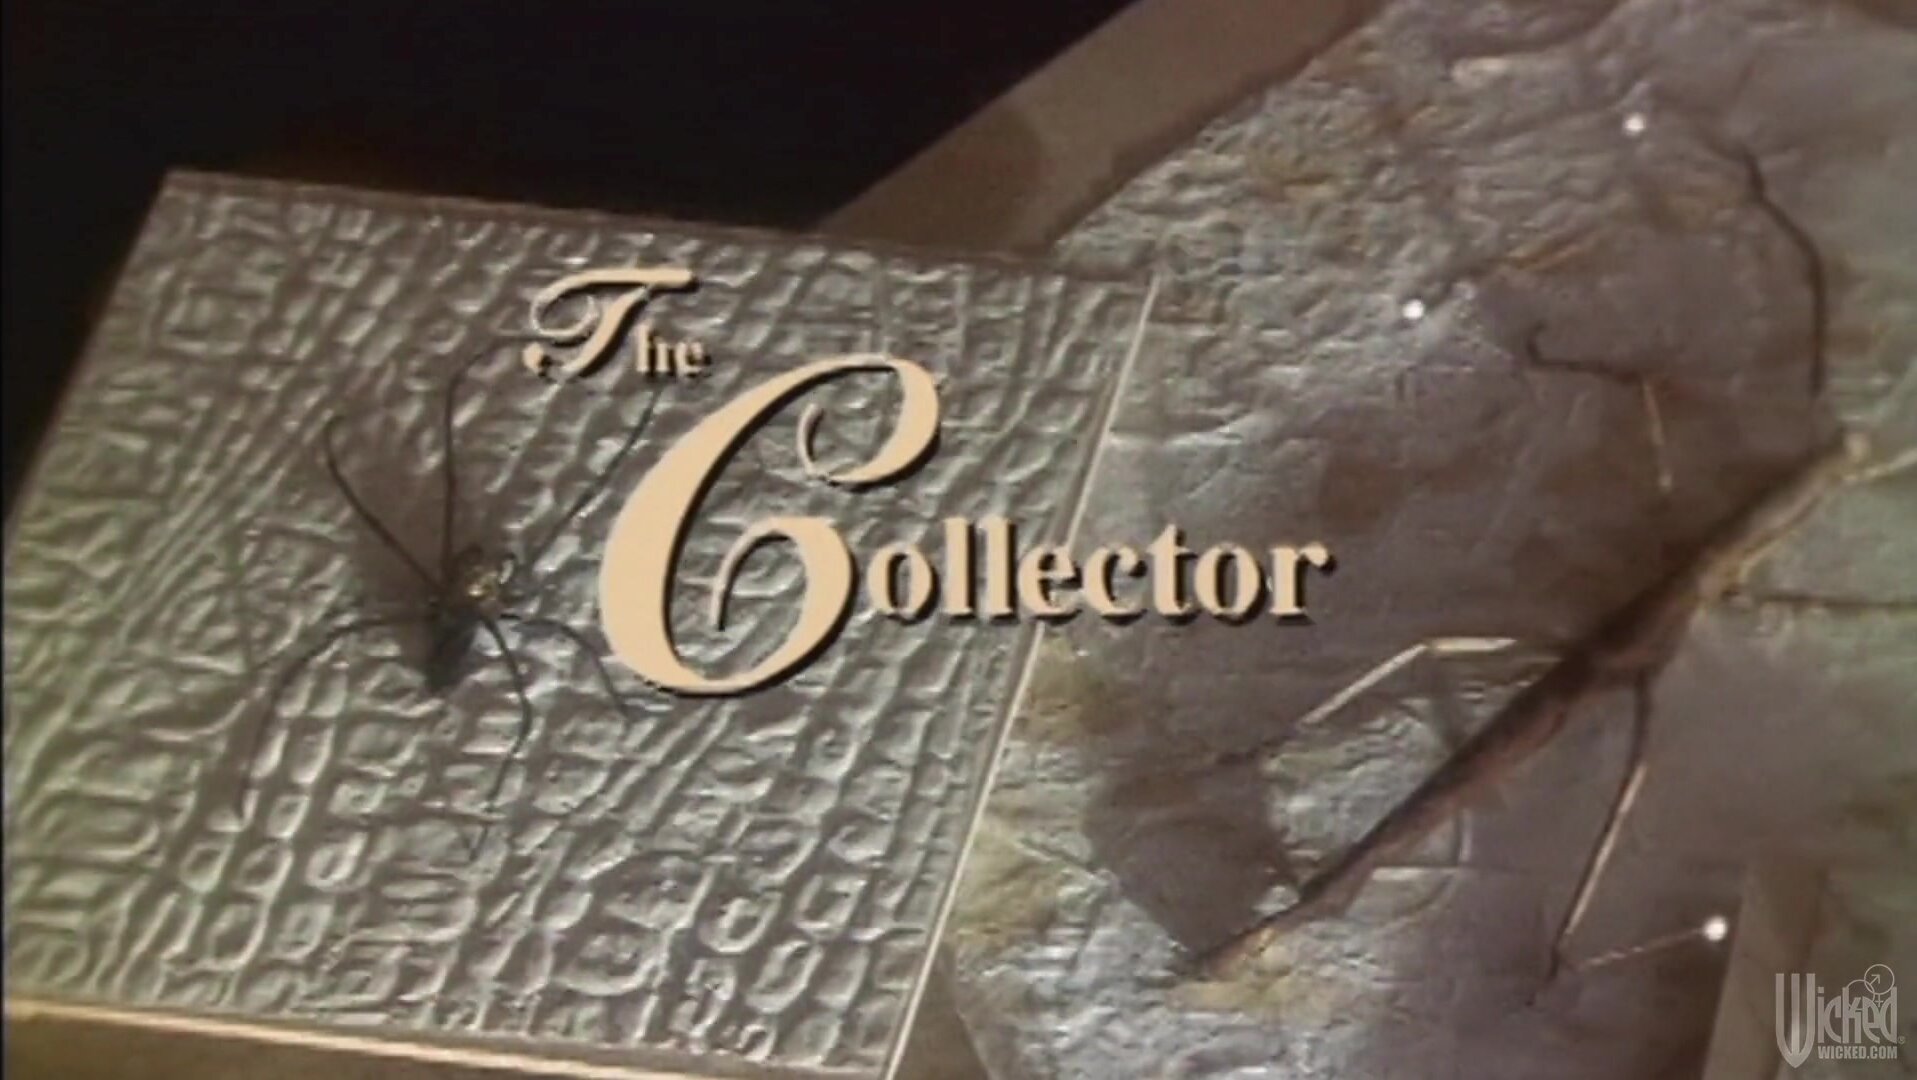 The collector scene 1 - Jessica Drake